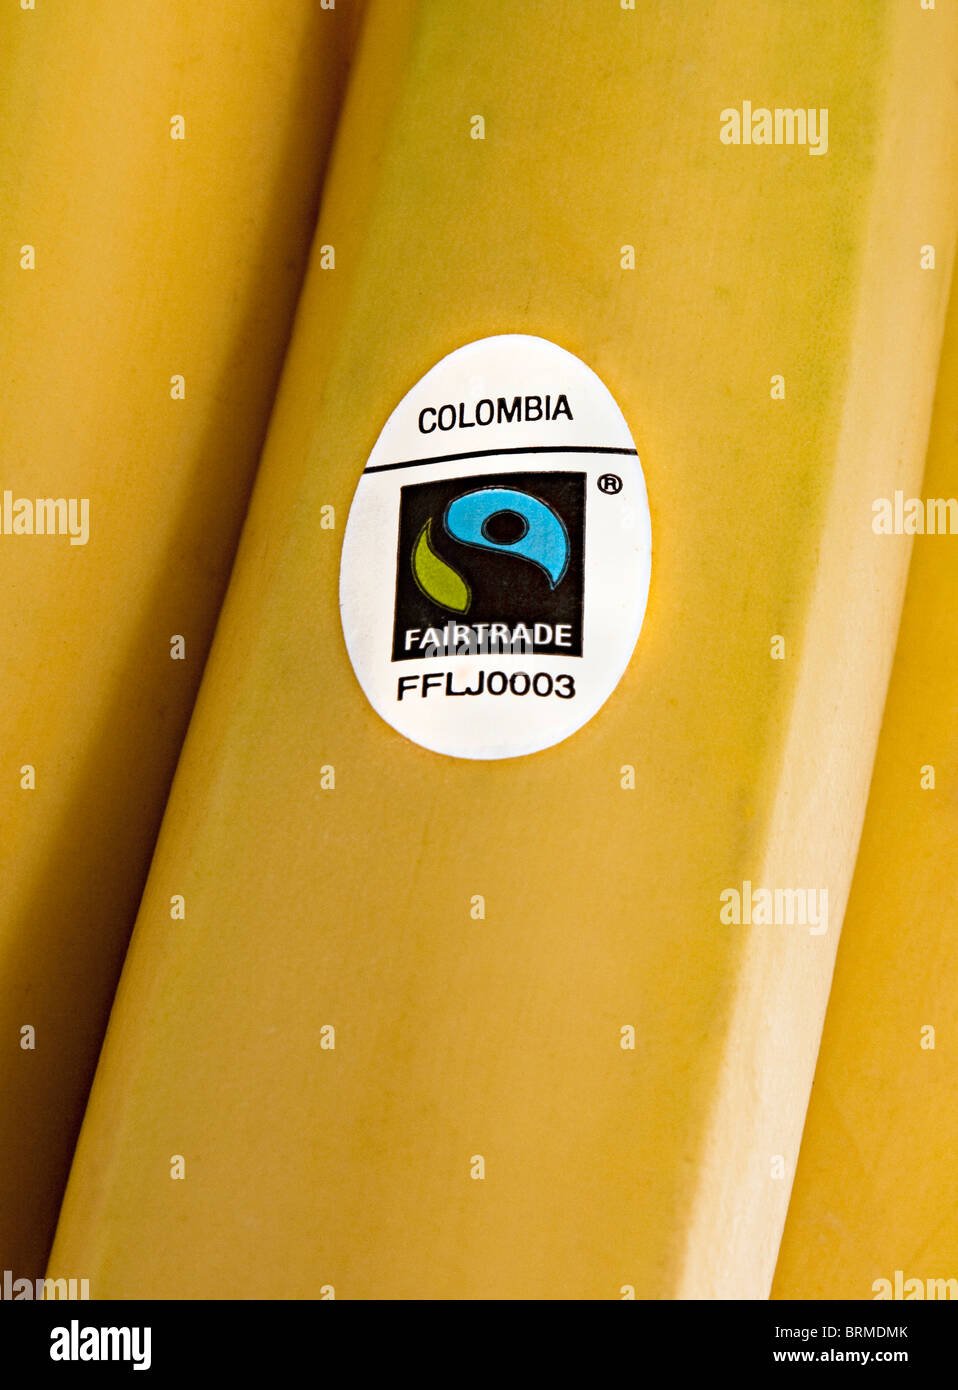 Bananen mit Fairtrade-Aufkleber und Herkunftsland Kolumbien in eine britische Supermarktkette verkauft Stockfoto